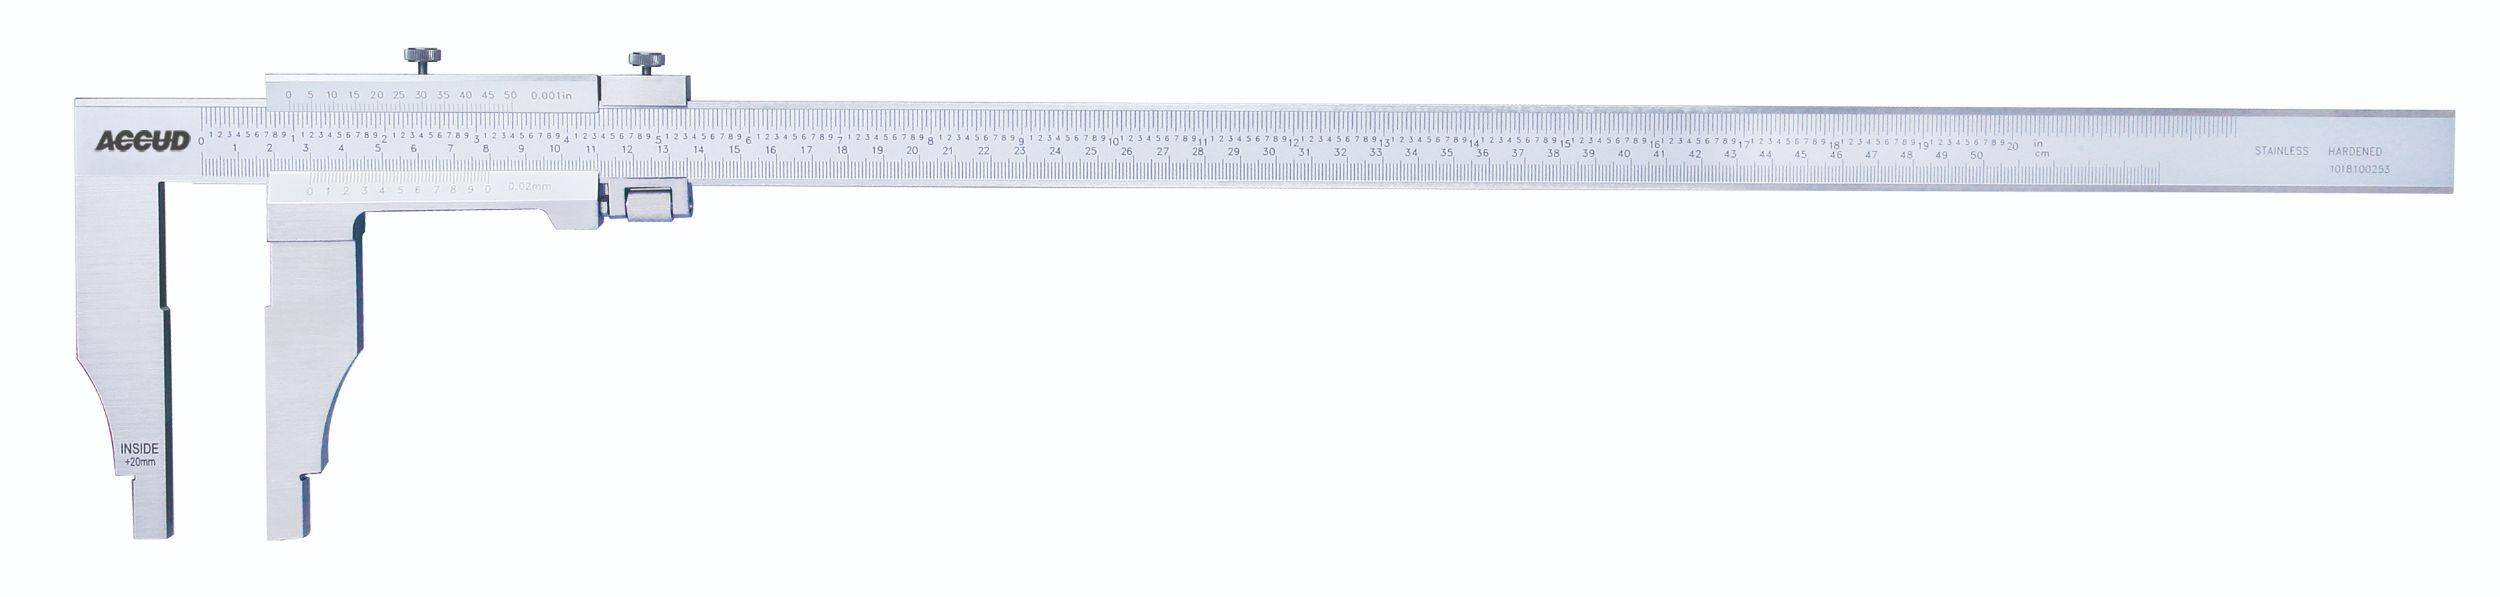 ACCUD suwmiarka analogowa 300/0.02 mm jednostronna długość szczęk 150 mm 128-012-22